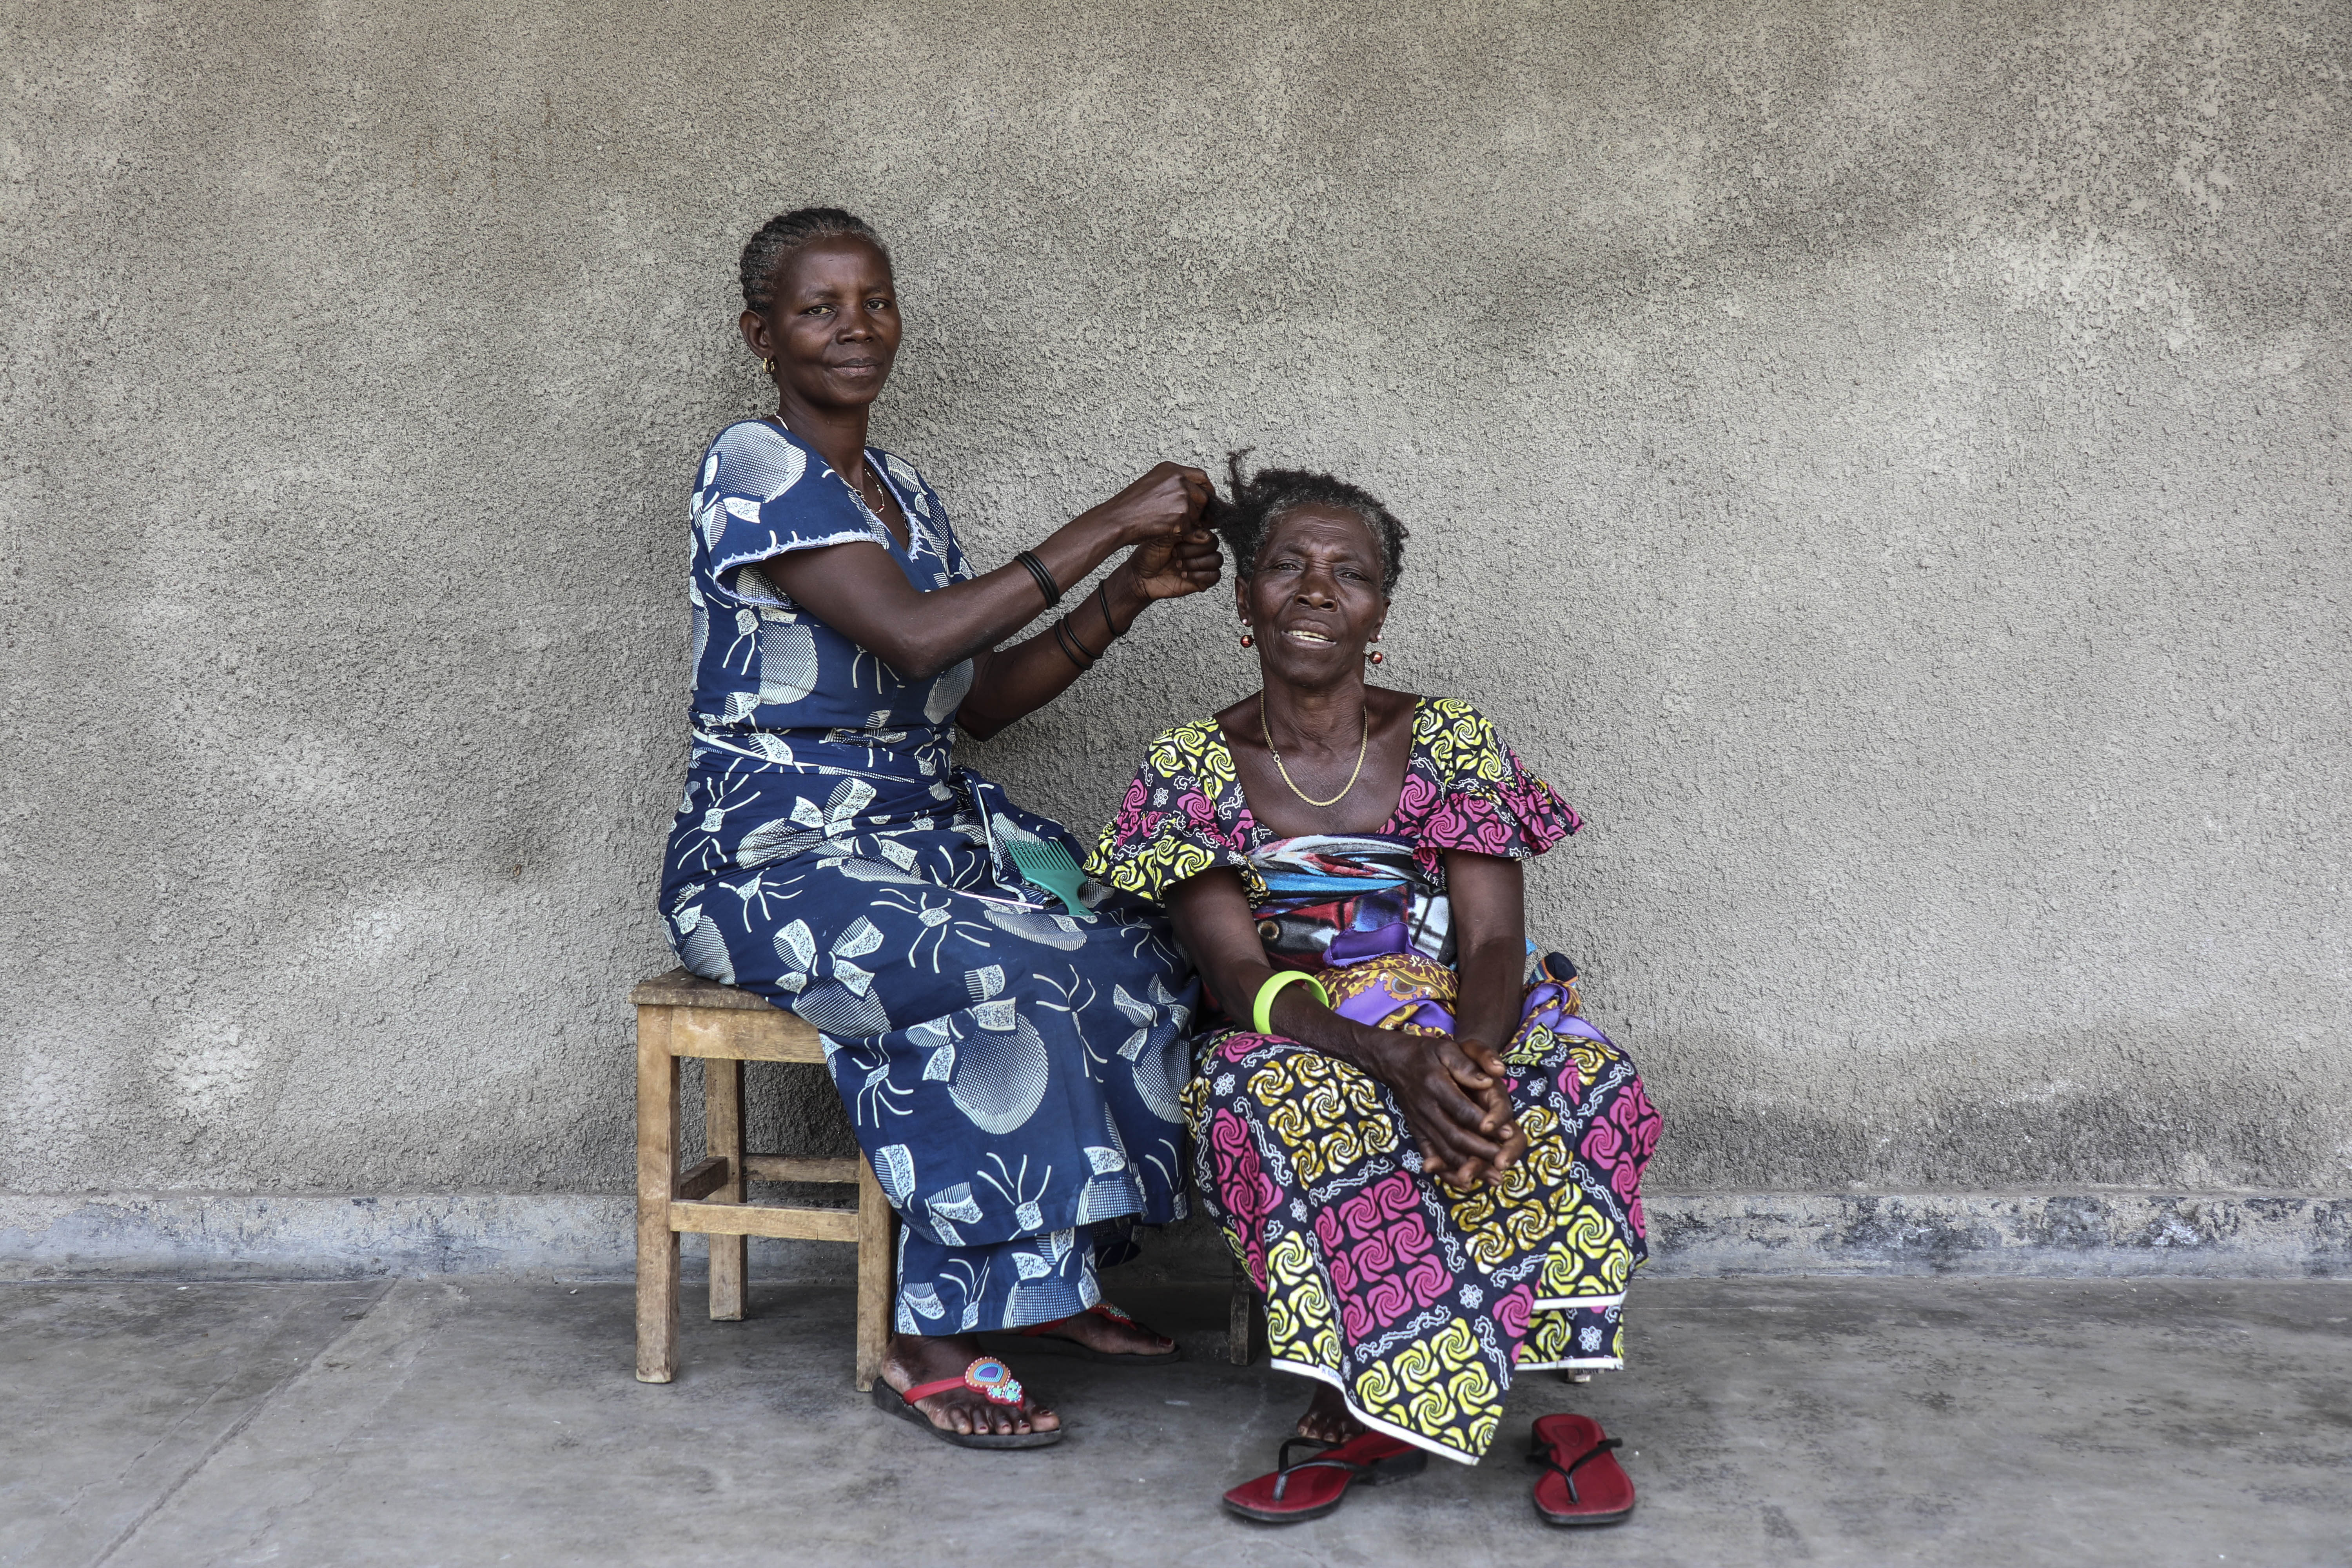 Certaines personnes atteintes des troubles mentaux viennent des villages lointains. Ces deux femmes sont de l’île de Idjwi au Sud Kivu. Elles ont accompagnée un malade mental au centre Tulizo Letu